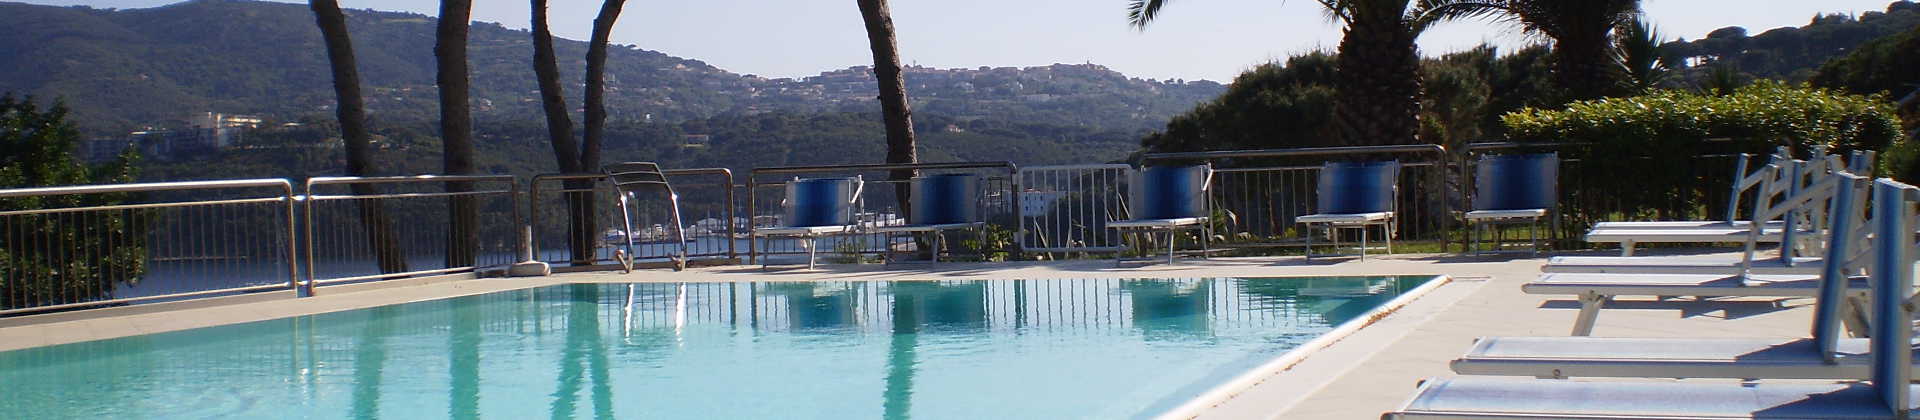 Ville con piscina Isola d'Elba